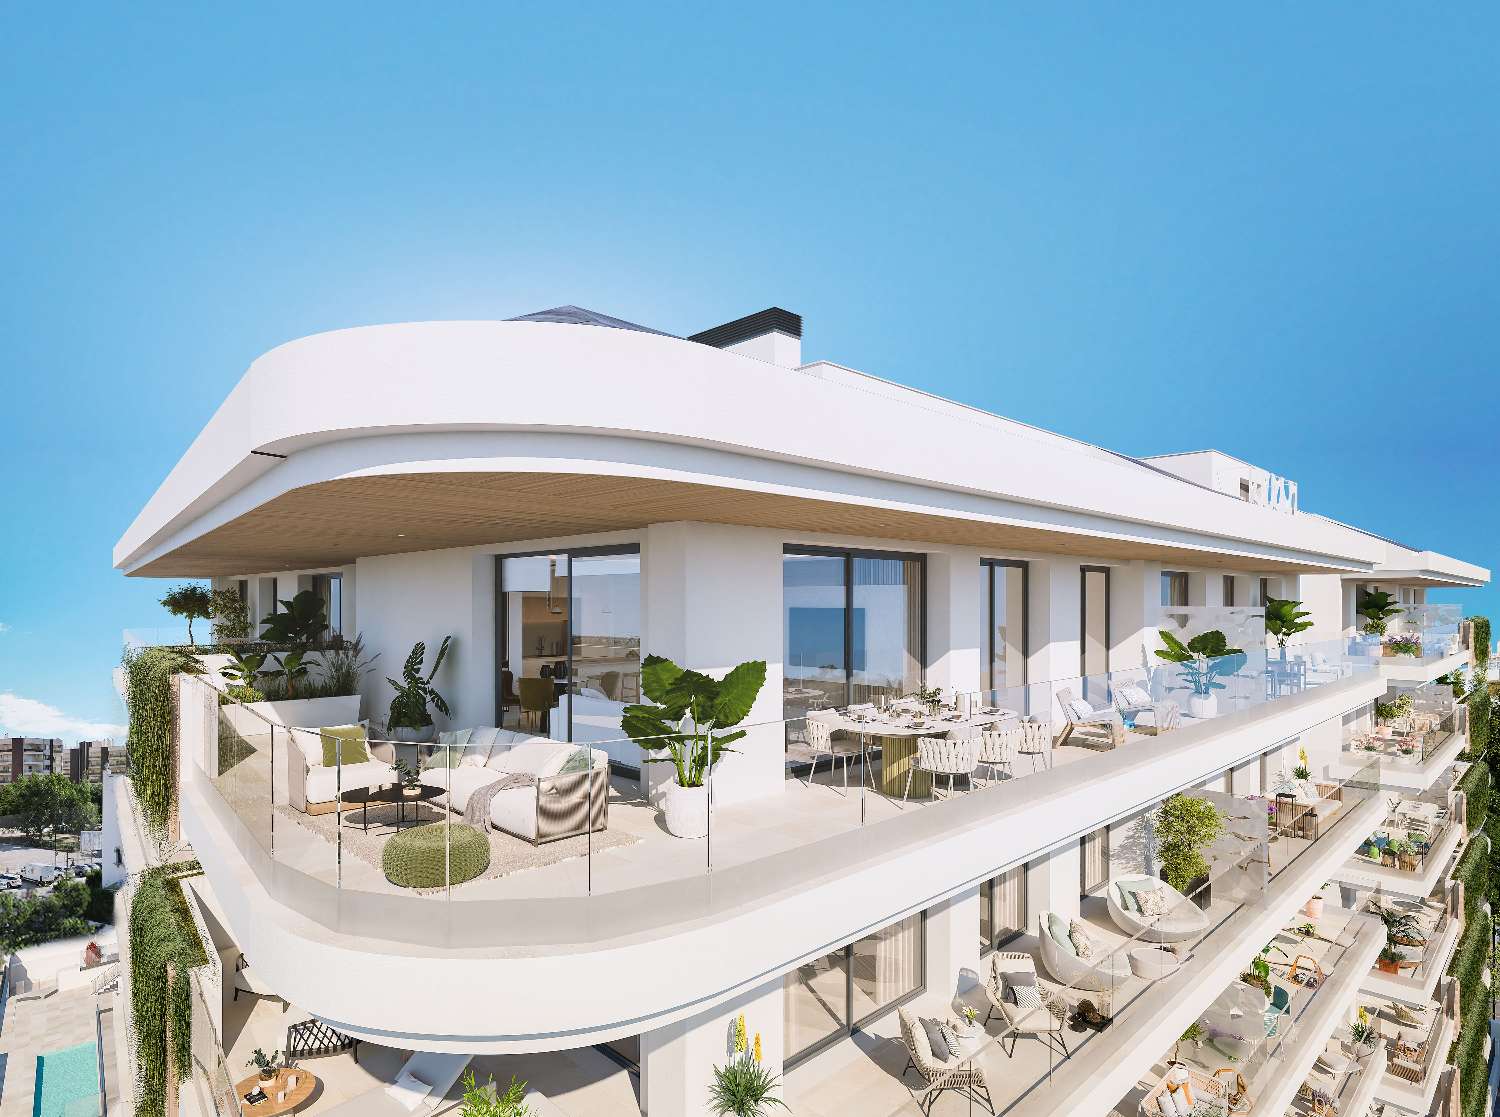 Nyt tilbud 2 soveværelser og 2 badeværelser med terrasse, parkering og opbevaringsrum i centrum af Fuengirola